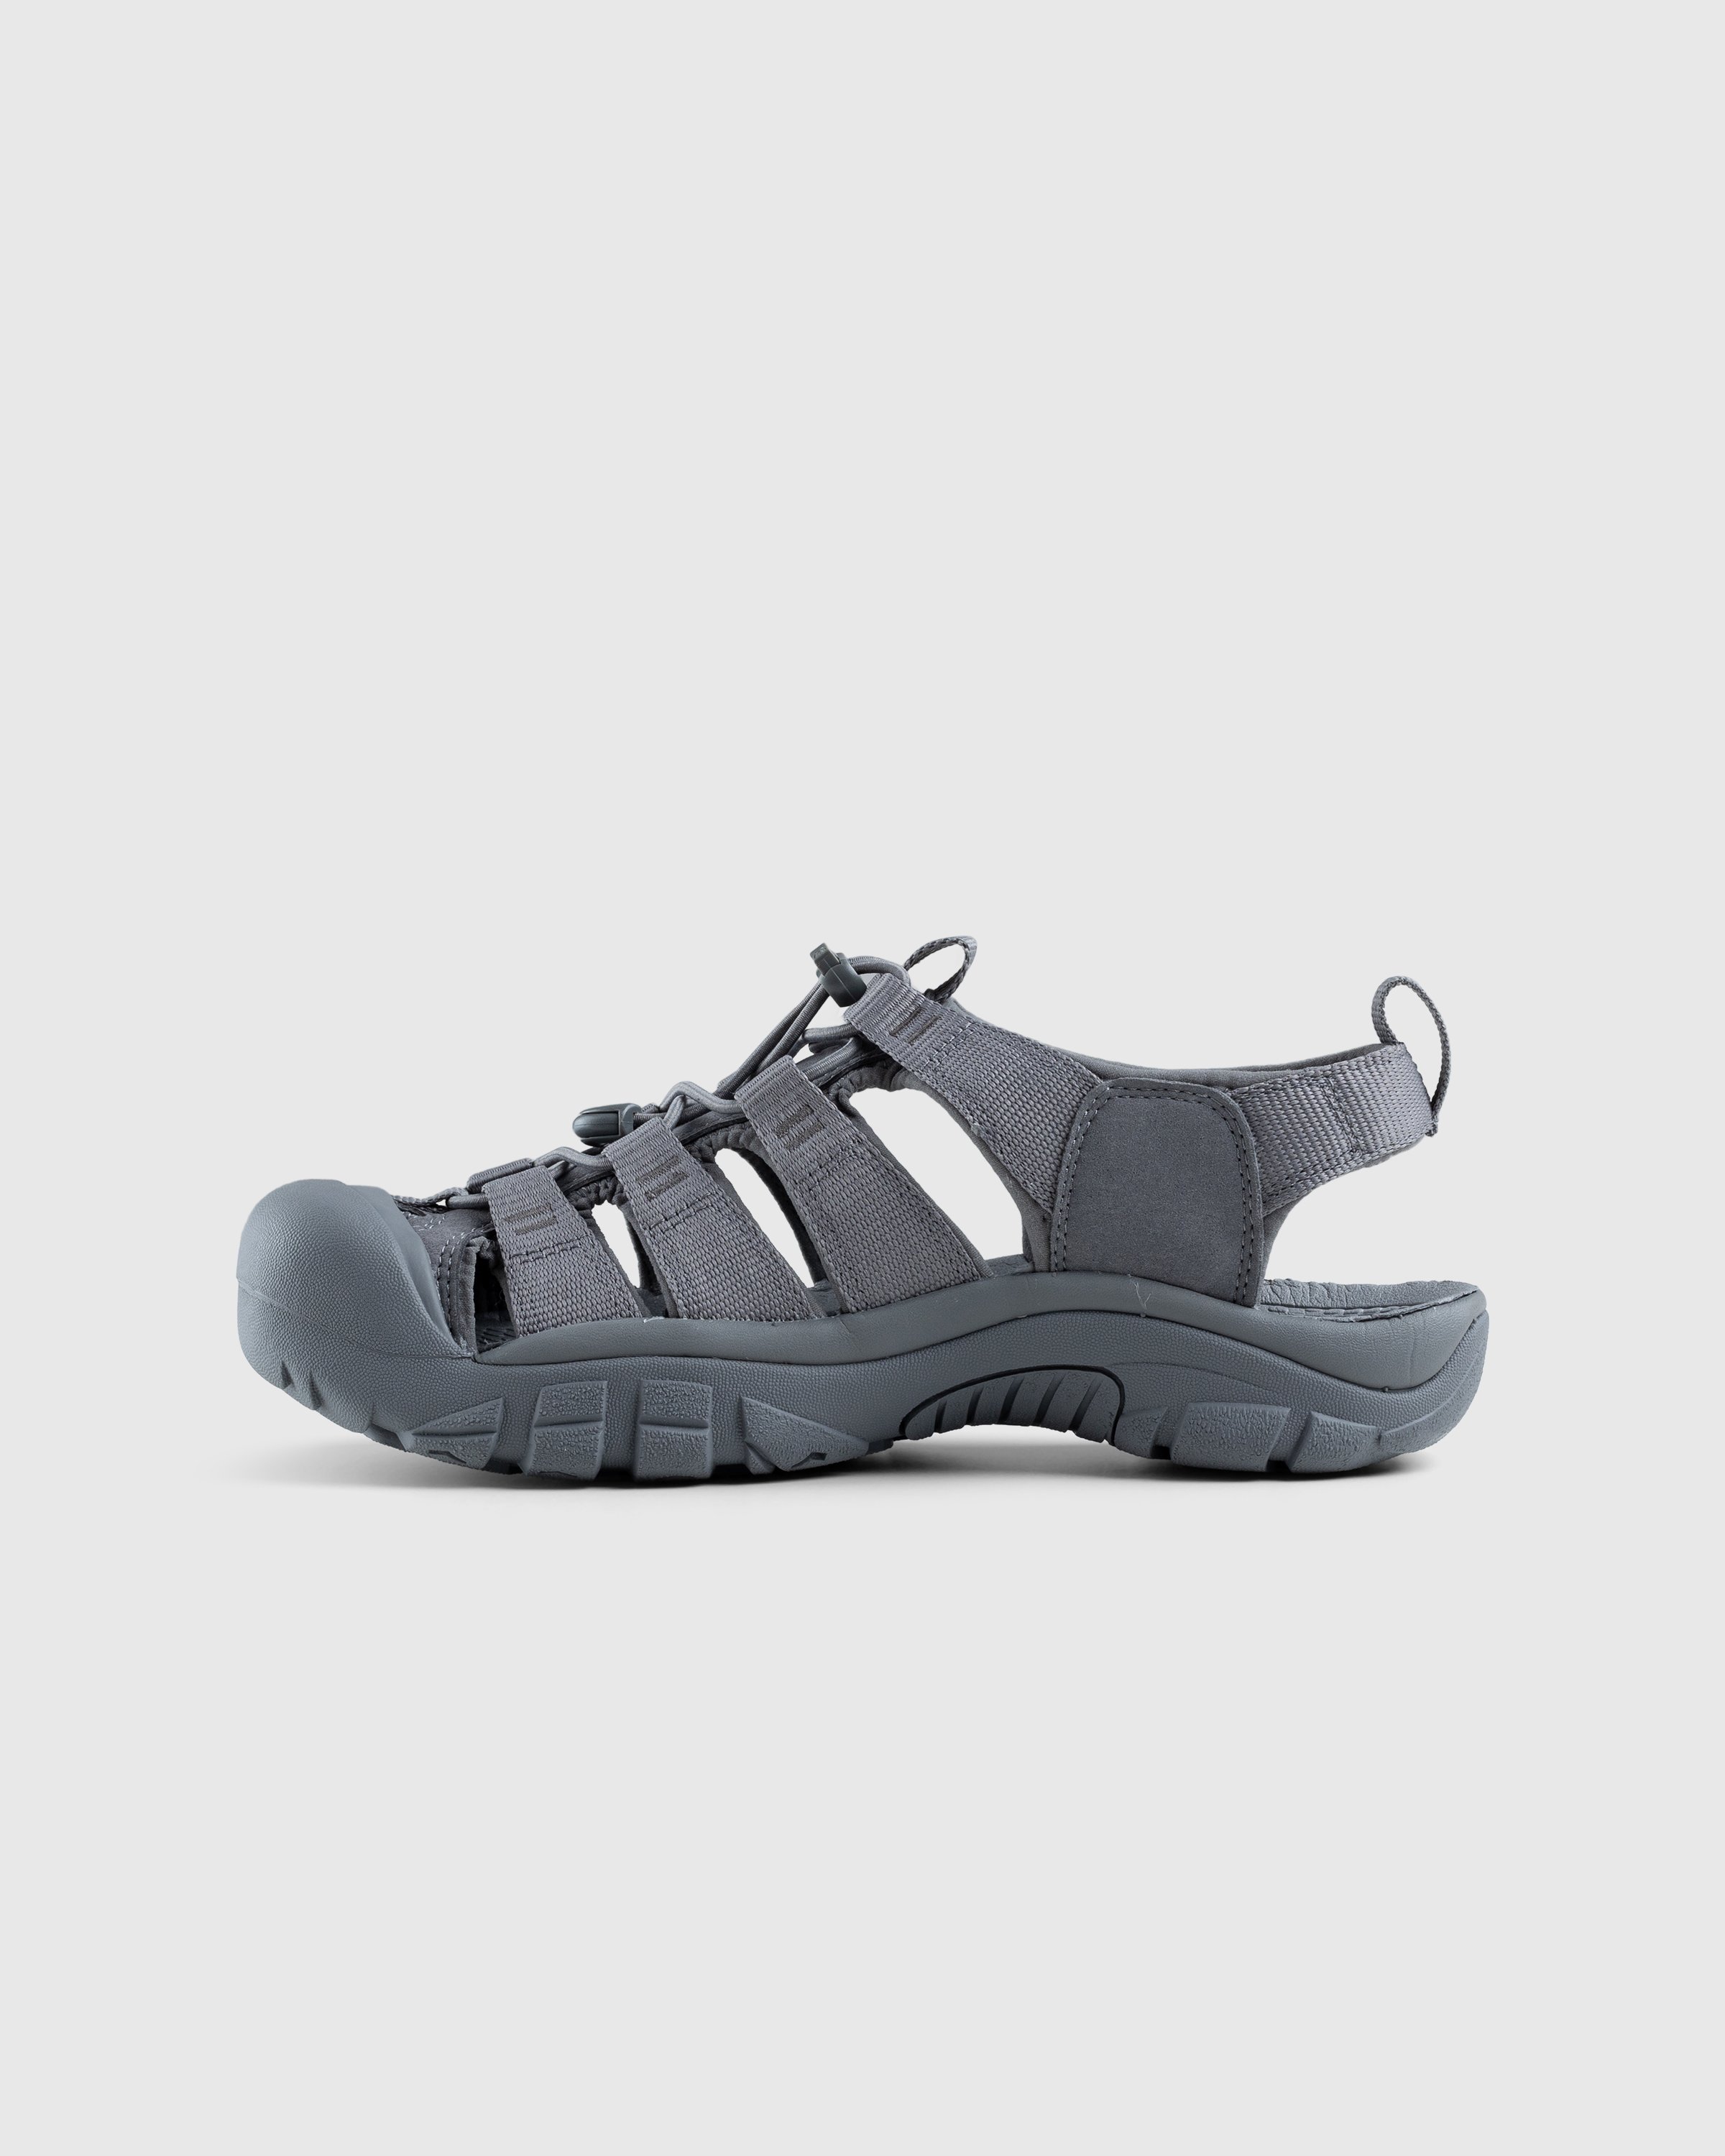 Keen - Newport H2 Monochrome/Steel Grey - Footwear - Grey - Image 2